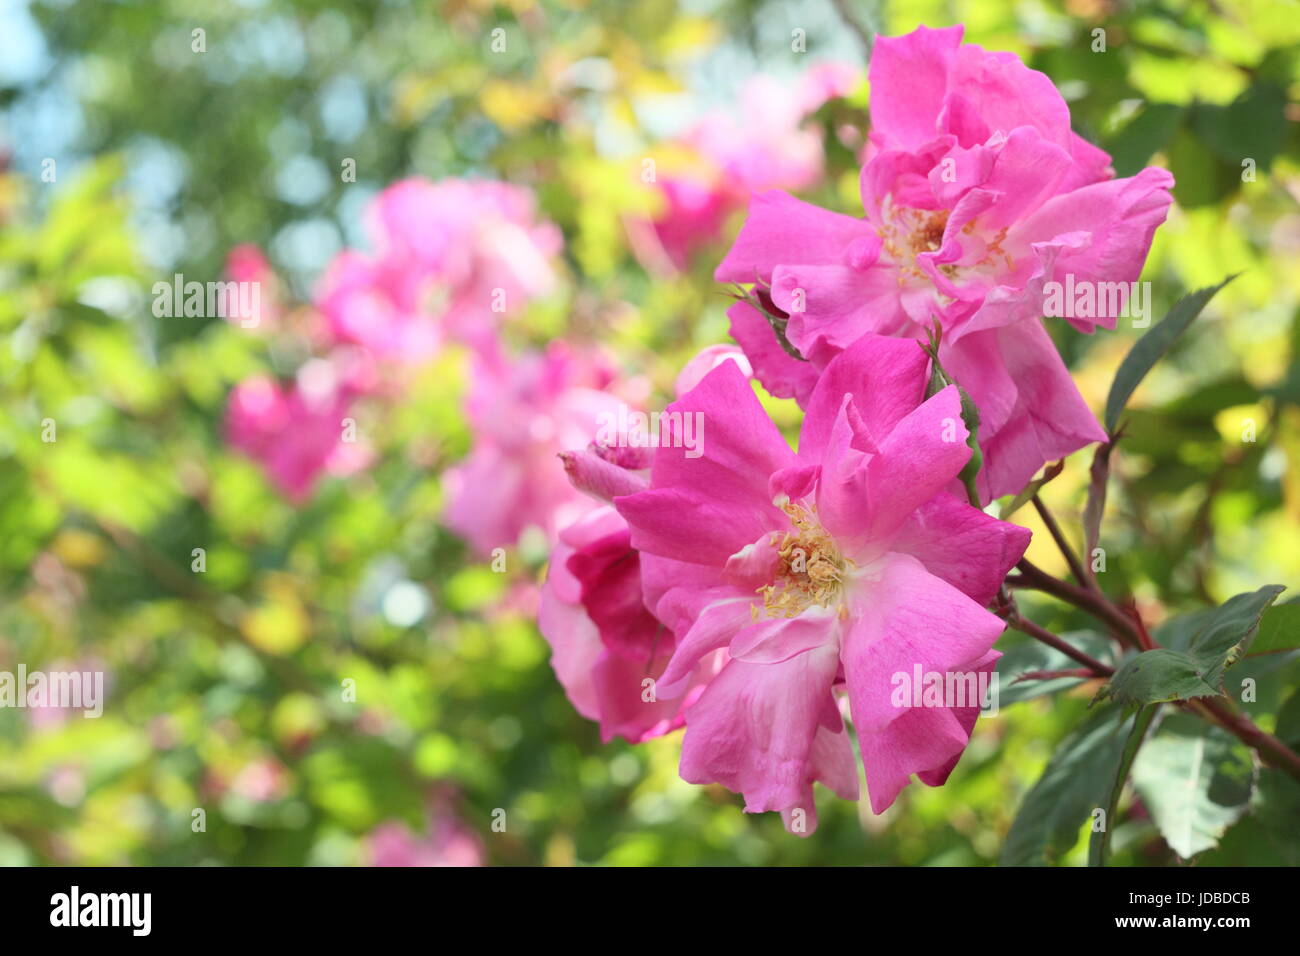 Rose etiquetados o marcados como 'Rosa l'heritieranea' ('Rambling Rose"), un viejo, boursault variedad aumentó en plena floración, (Junio) - REINO UNIDO Foto de stock